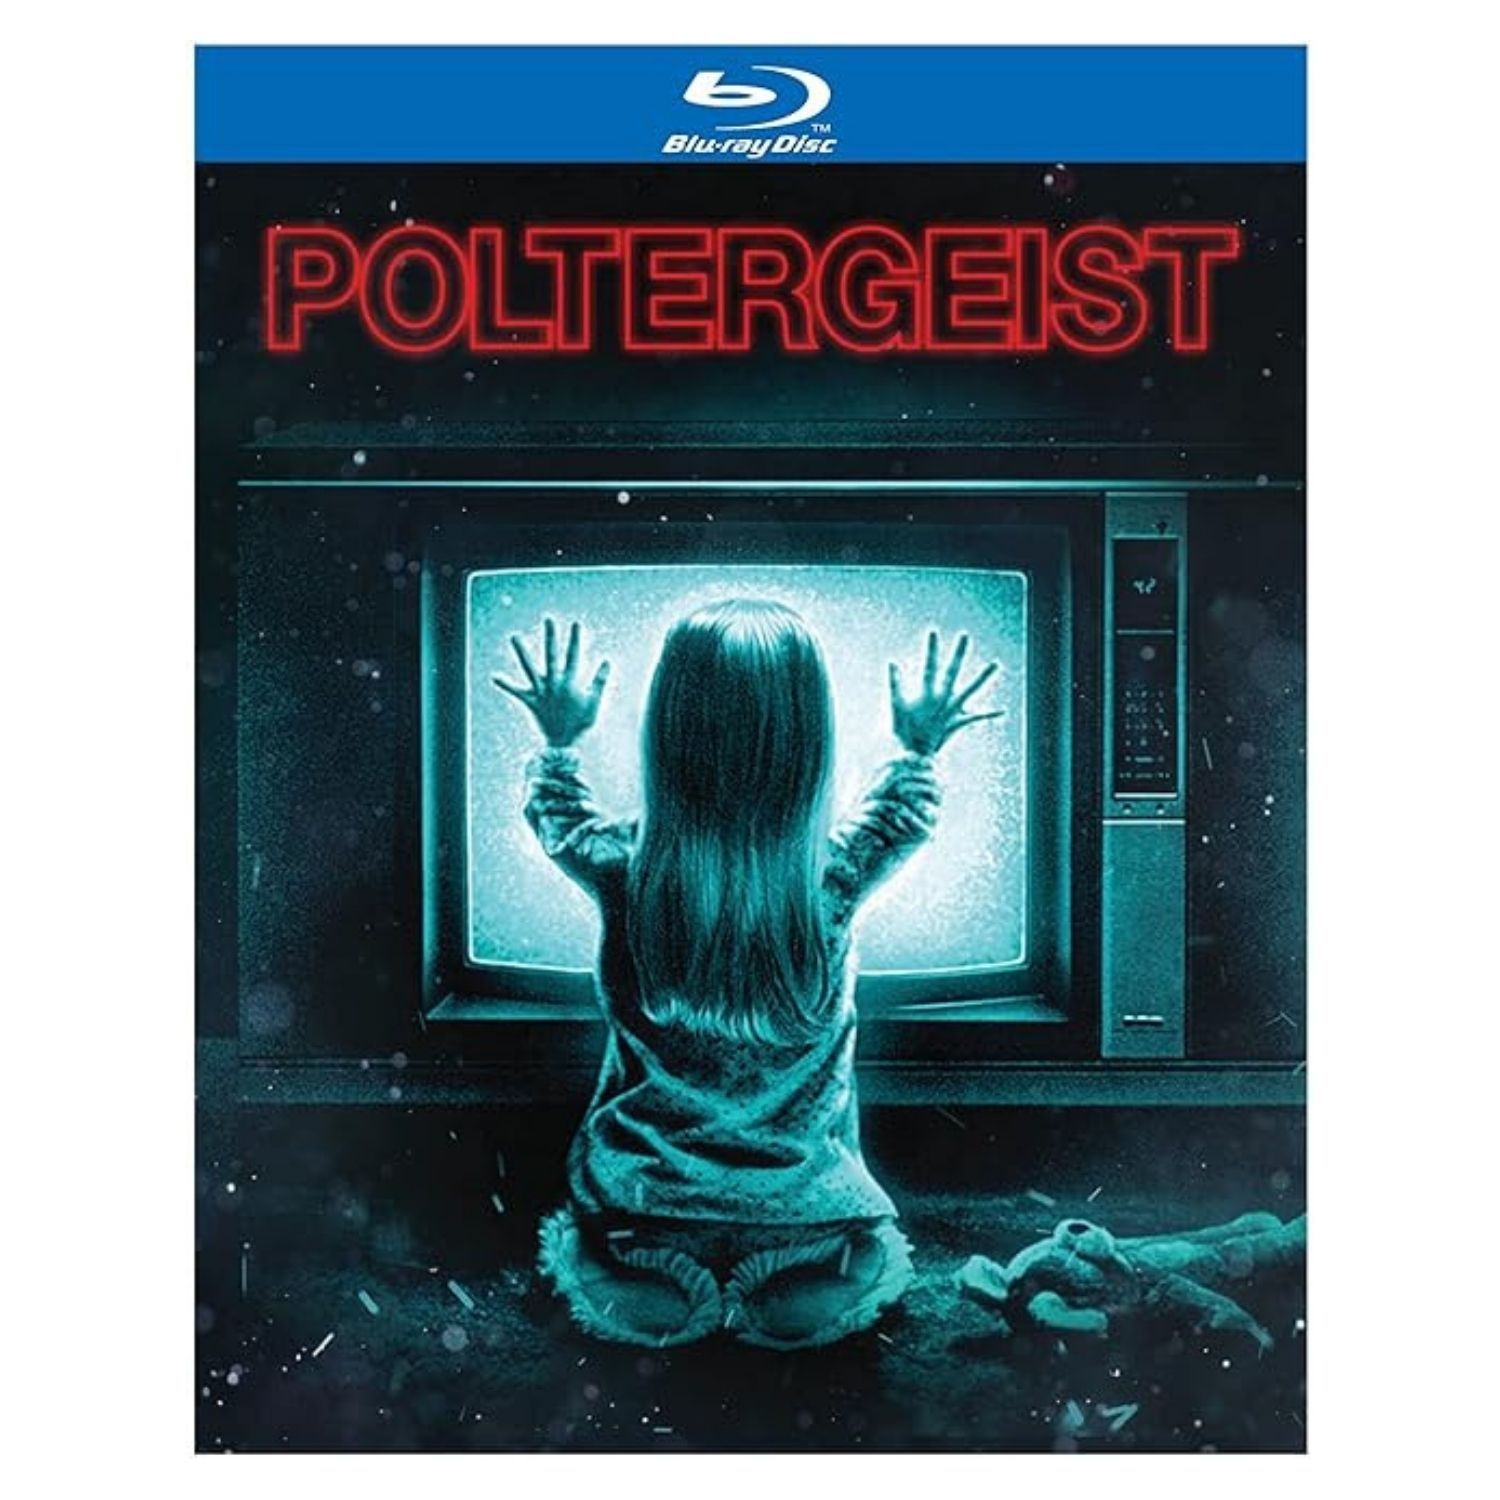 Poltergeist on Blu-ray